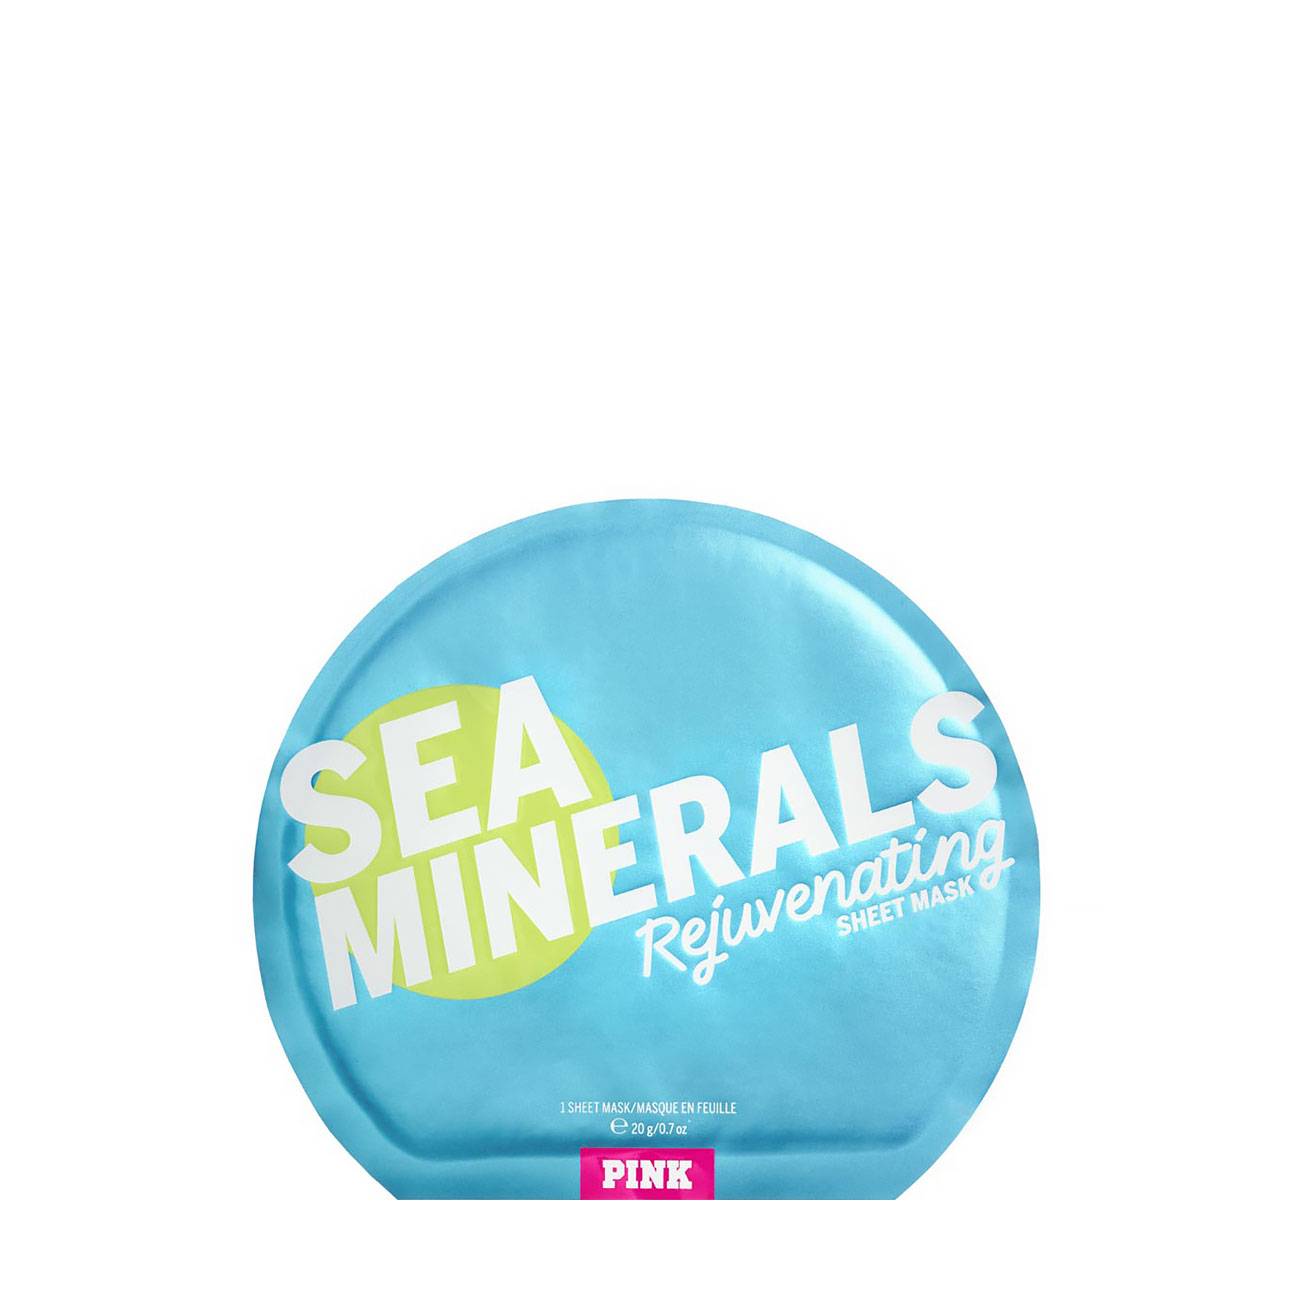 Masca tratament Victoria’s Secret PINK SEA MINERALS – REJUVENATING SHEET MASK 20gr cu comanda online